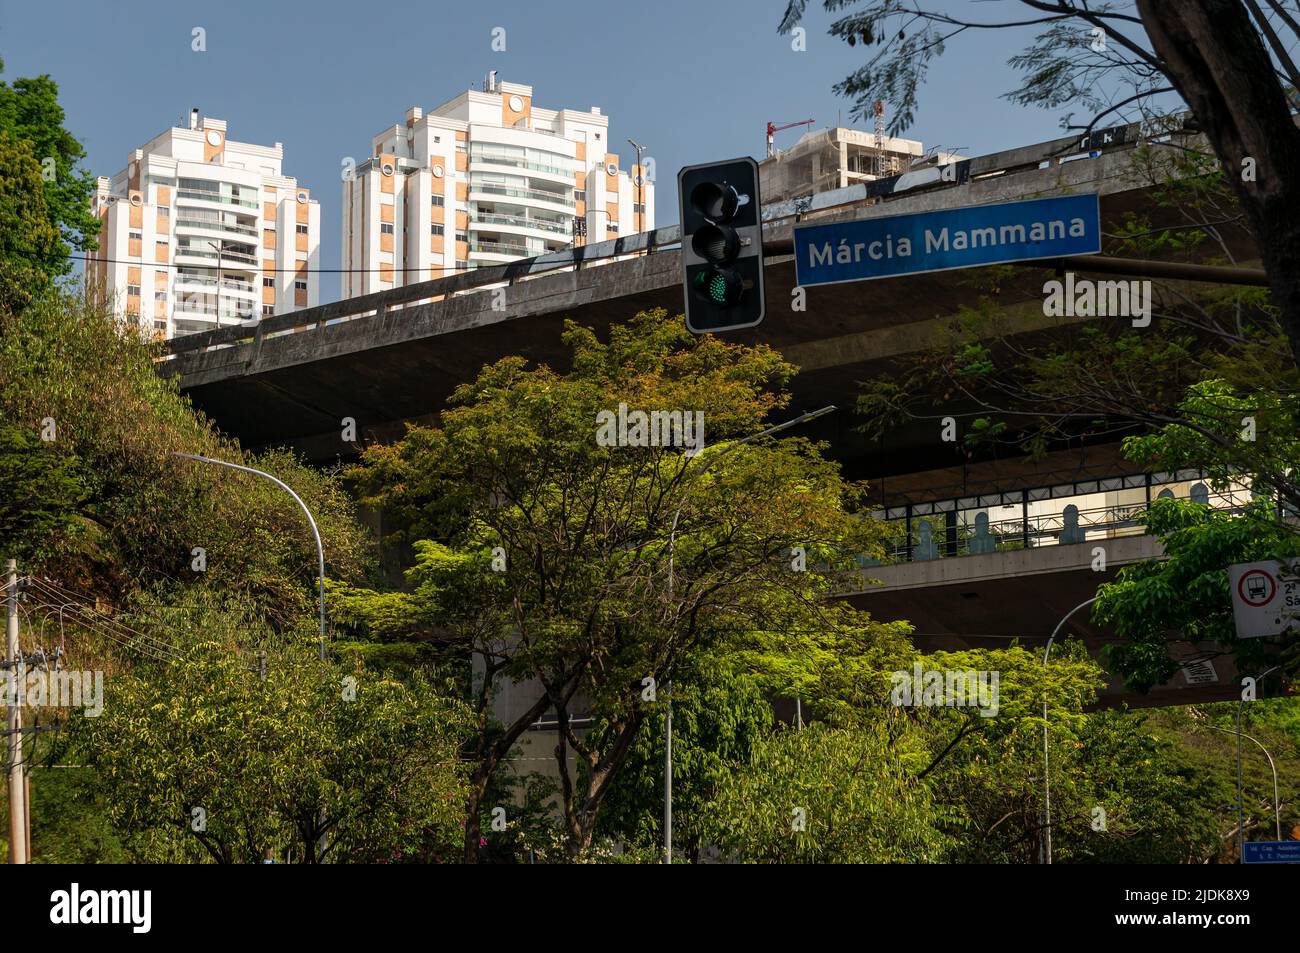 Grands arbres pleins de végétation verte de l'avenue Paulo VI avec le viaduc Capitao Adalberto Mendes et la station de métro Sumare (ligne 2 - verte) à l'arrière. Banque D'Images